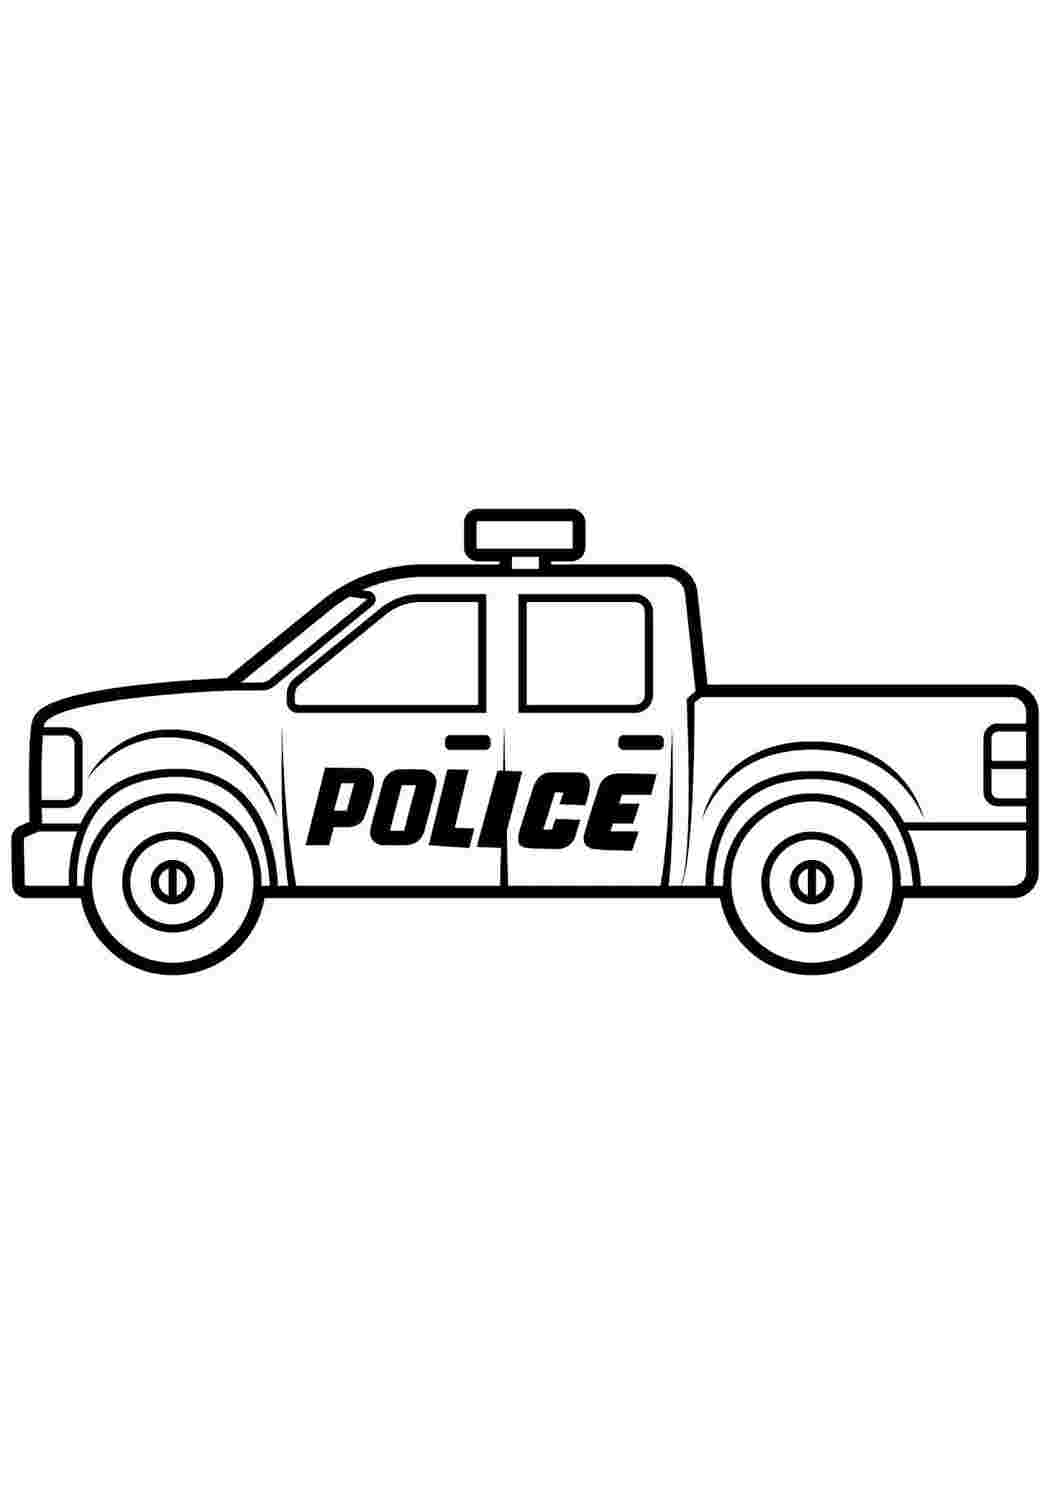 Раскраска «Полицейские машины мира»